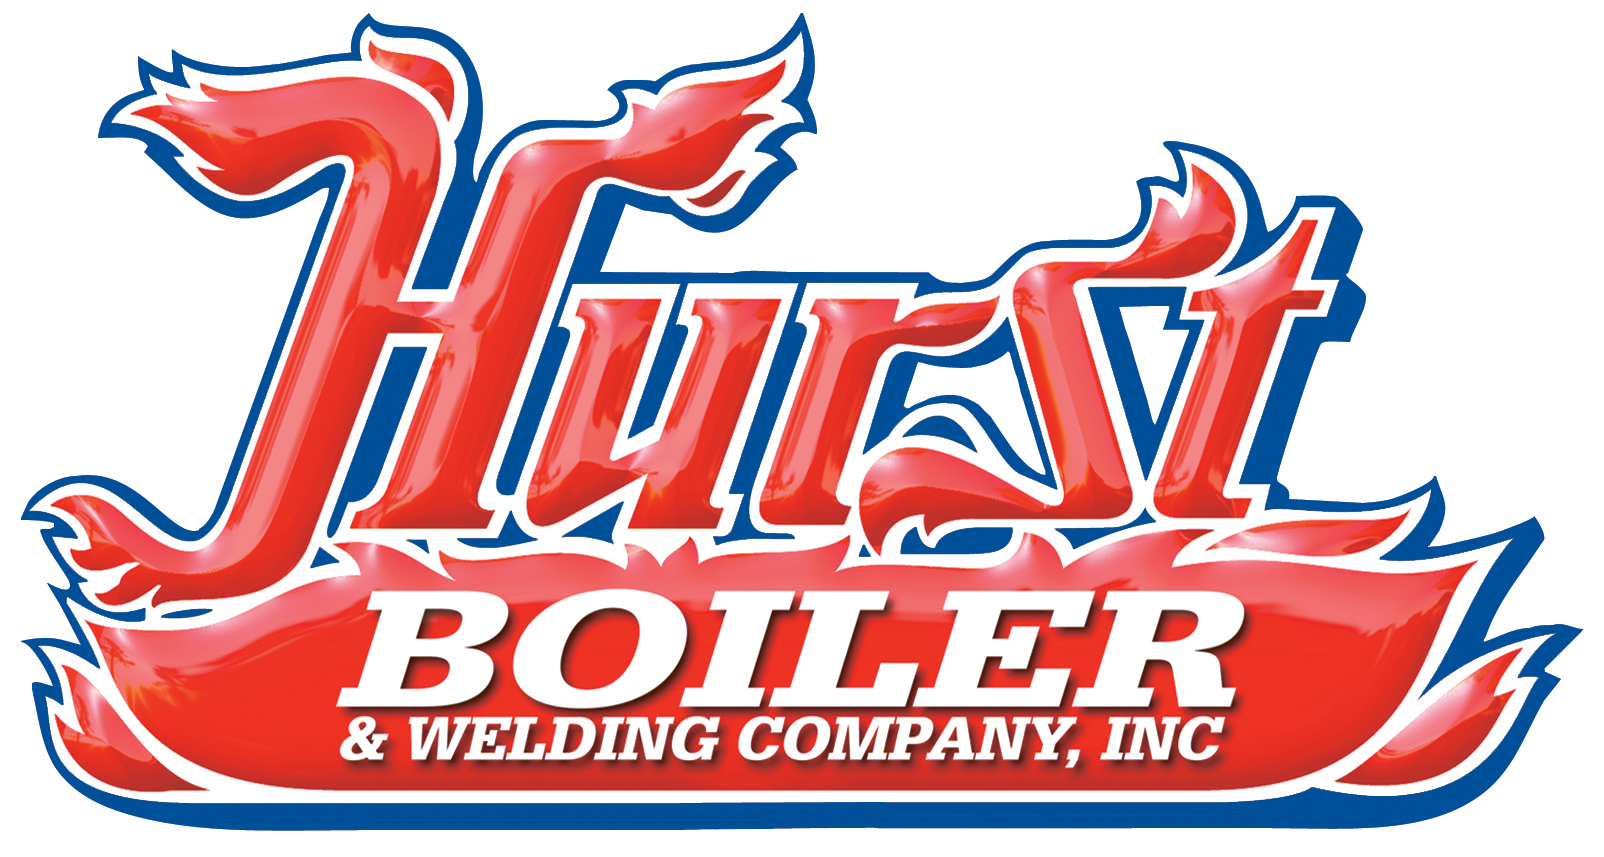 Hurst Boiler & Welding Co., Inc., www.HurstBoiler.com, Phone: 1 (877) 994-8778